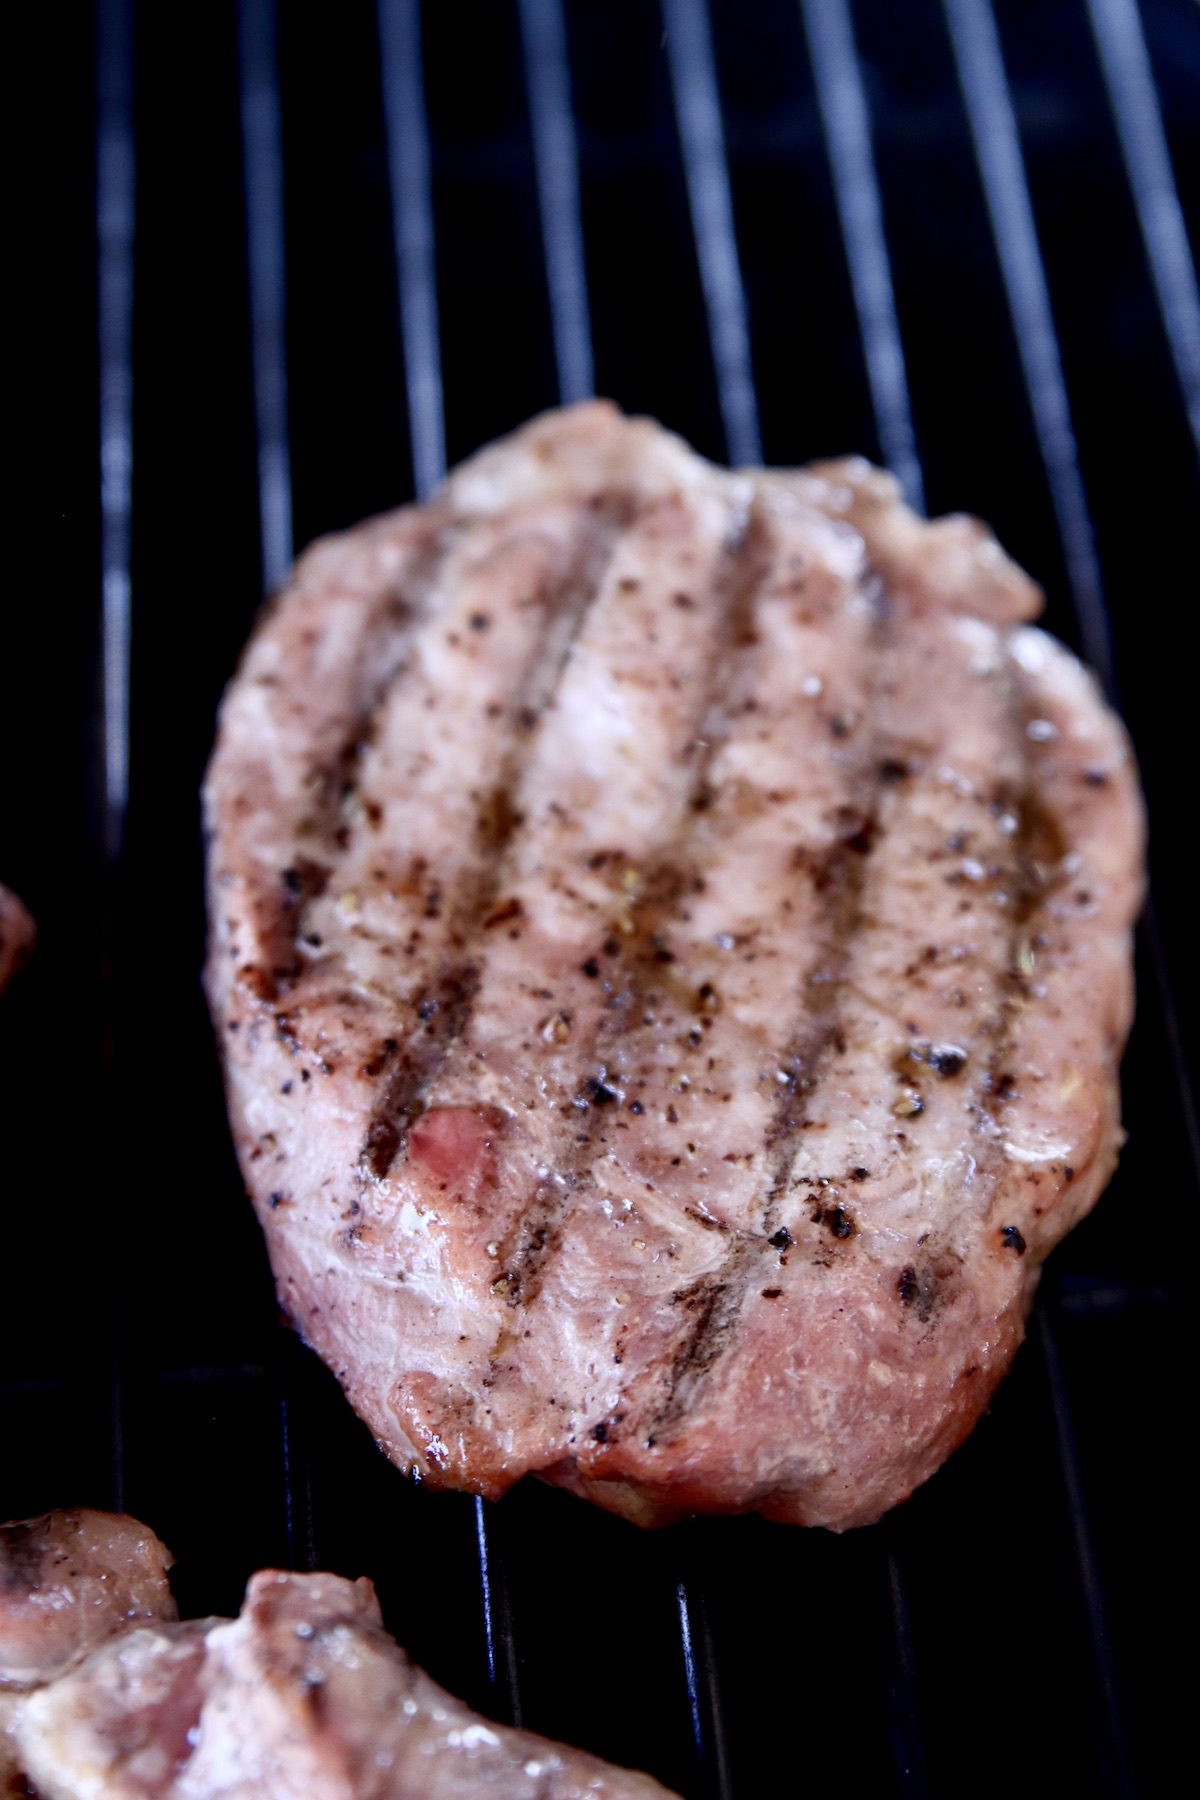 grilling pork chops - close up